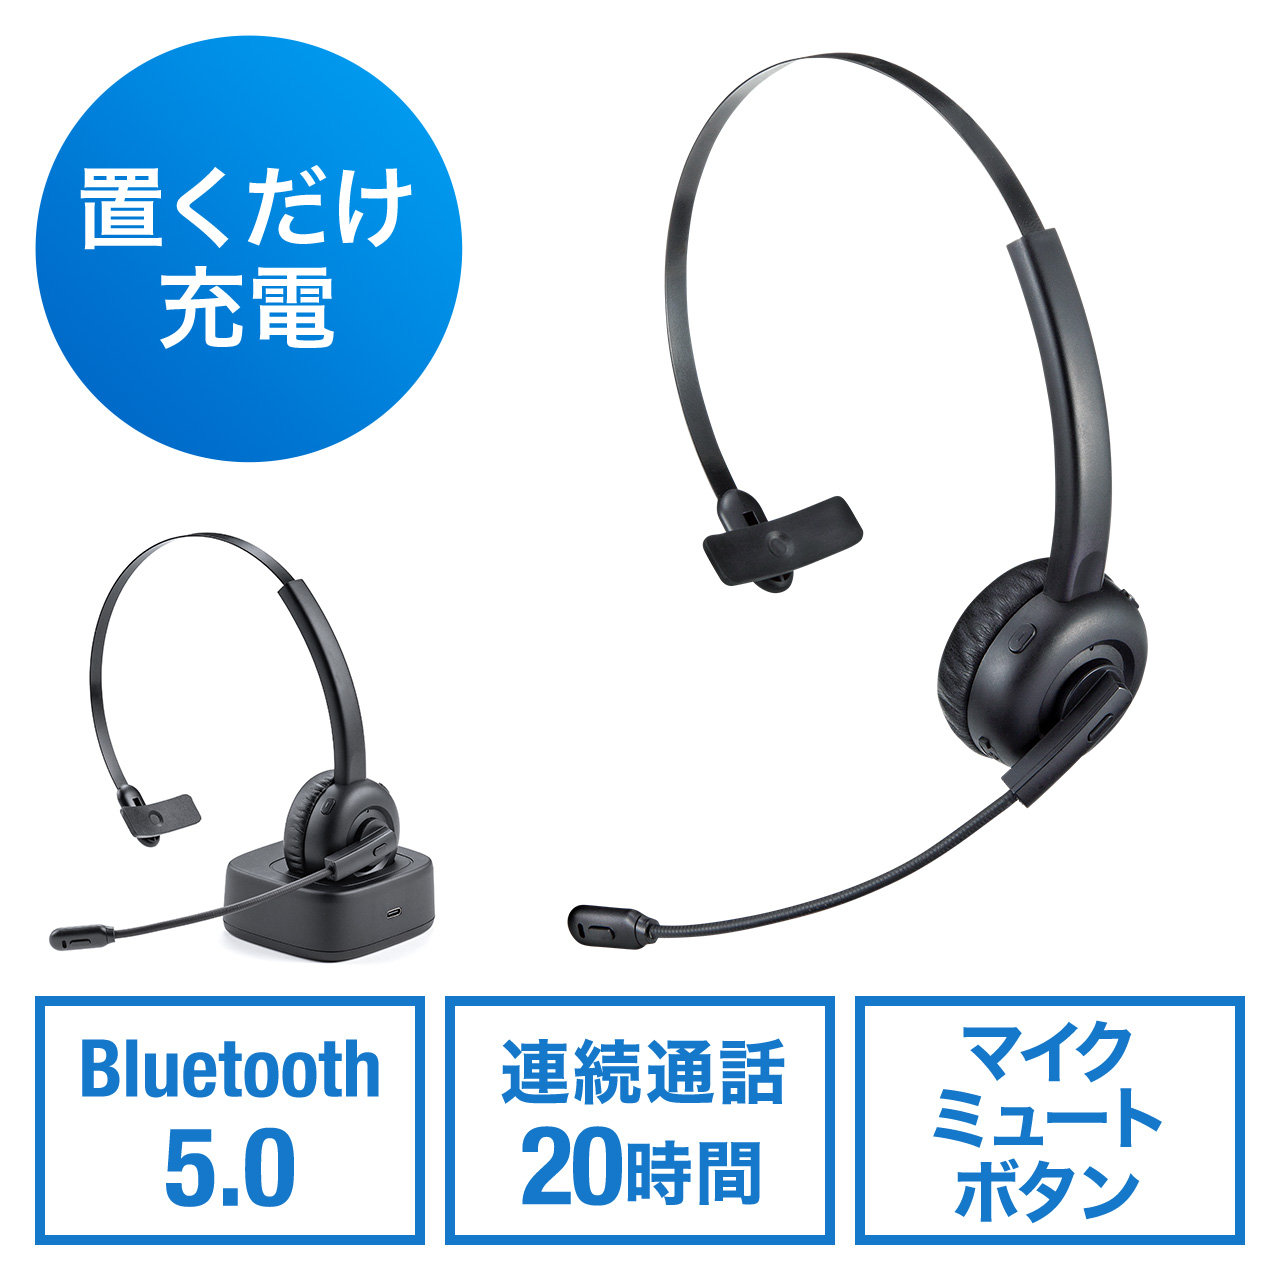 Bluetoothヘッドセット 片耳 オーバーヘッド型 マイク ミュート機能 クレードルつき ハンズフリー ワイヤレスヘッドセット 通話 コールセンター テレワーク 400 Btmh023bkの販売商品 通販ならサンワダイレクト